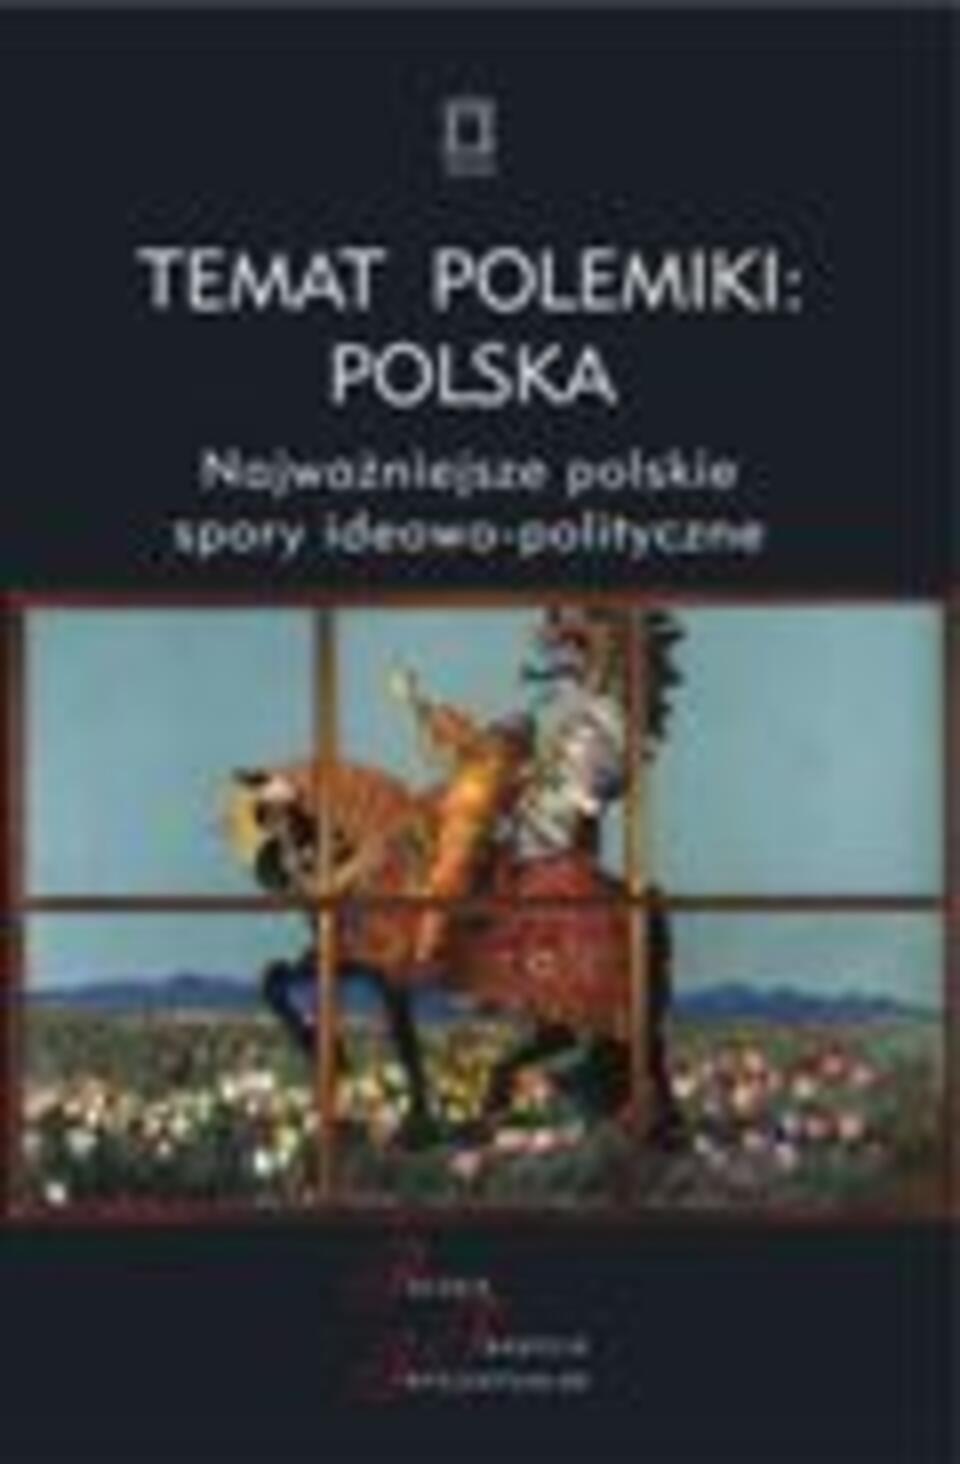 Fot. Temat polemiki: Polska. Najważniejsze polskie spory ideowo-polityczne